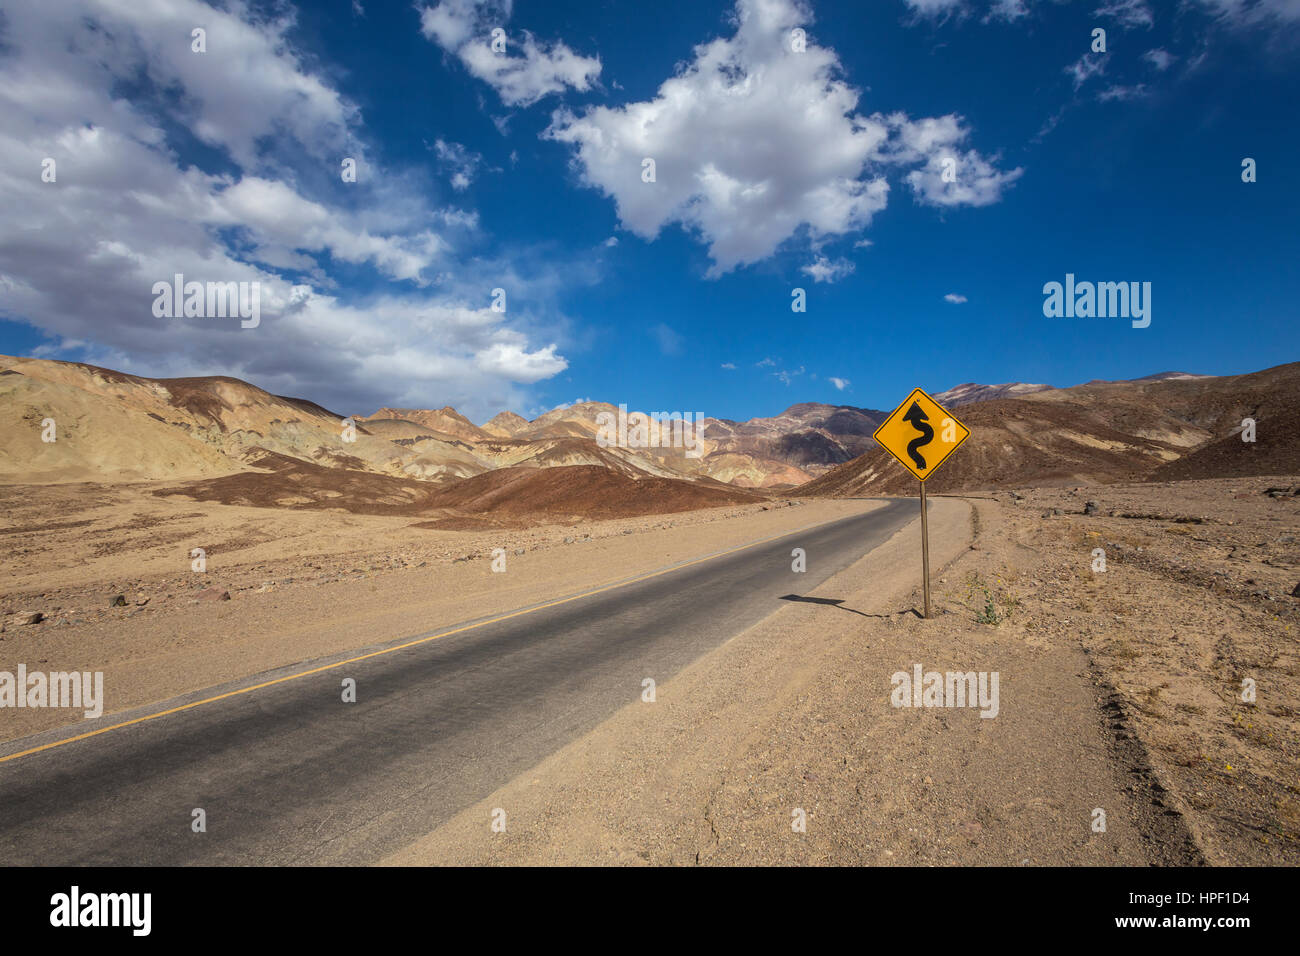 Panneau routier, route panoramique, l'artiste, les Black Mountains, Death Valley National Park, Death Valley, California, United States, Amérique du Nord Banque D'Images